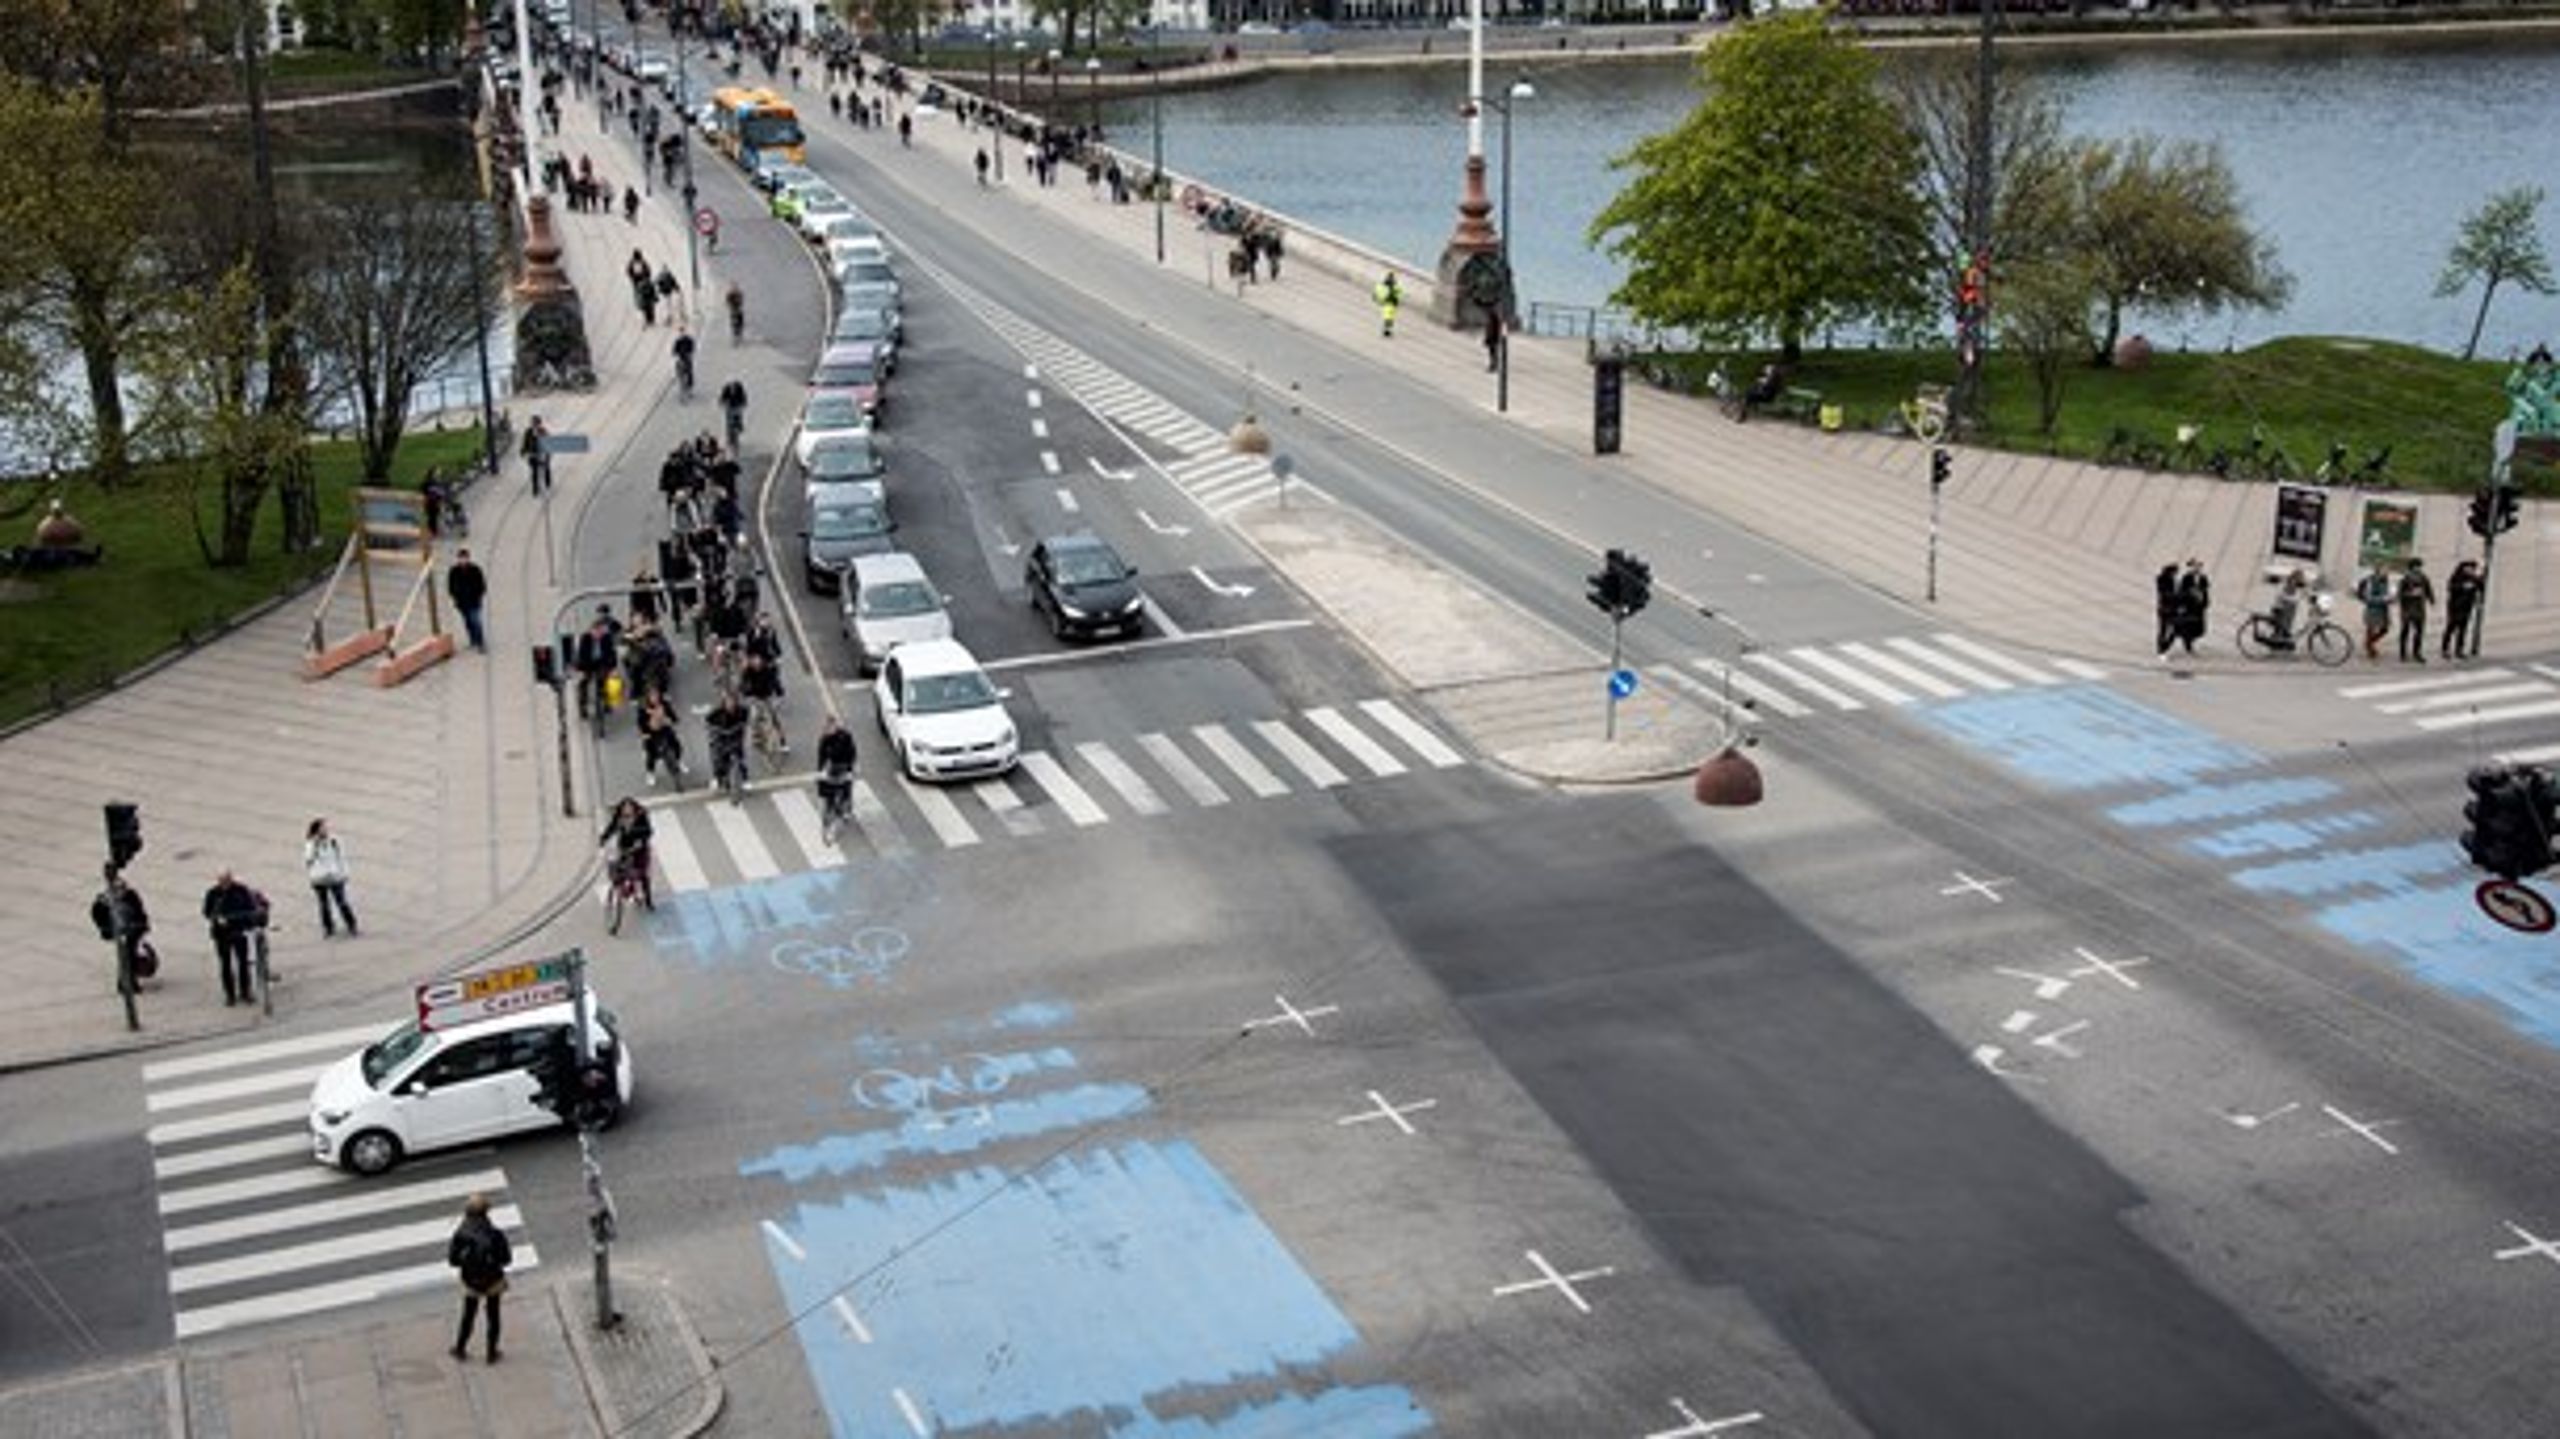 Målinger af cyklister som i København kan give mulighed for at anlægge flere cykelstier og påvirke antallet af cyklister, skriver Peer Frank og Kurt Kjærgaard Kristensen.&nbsp;